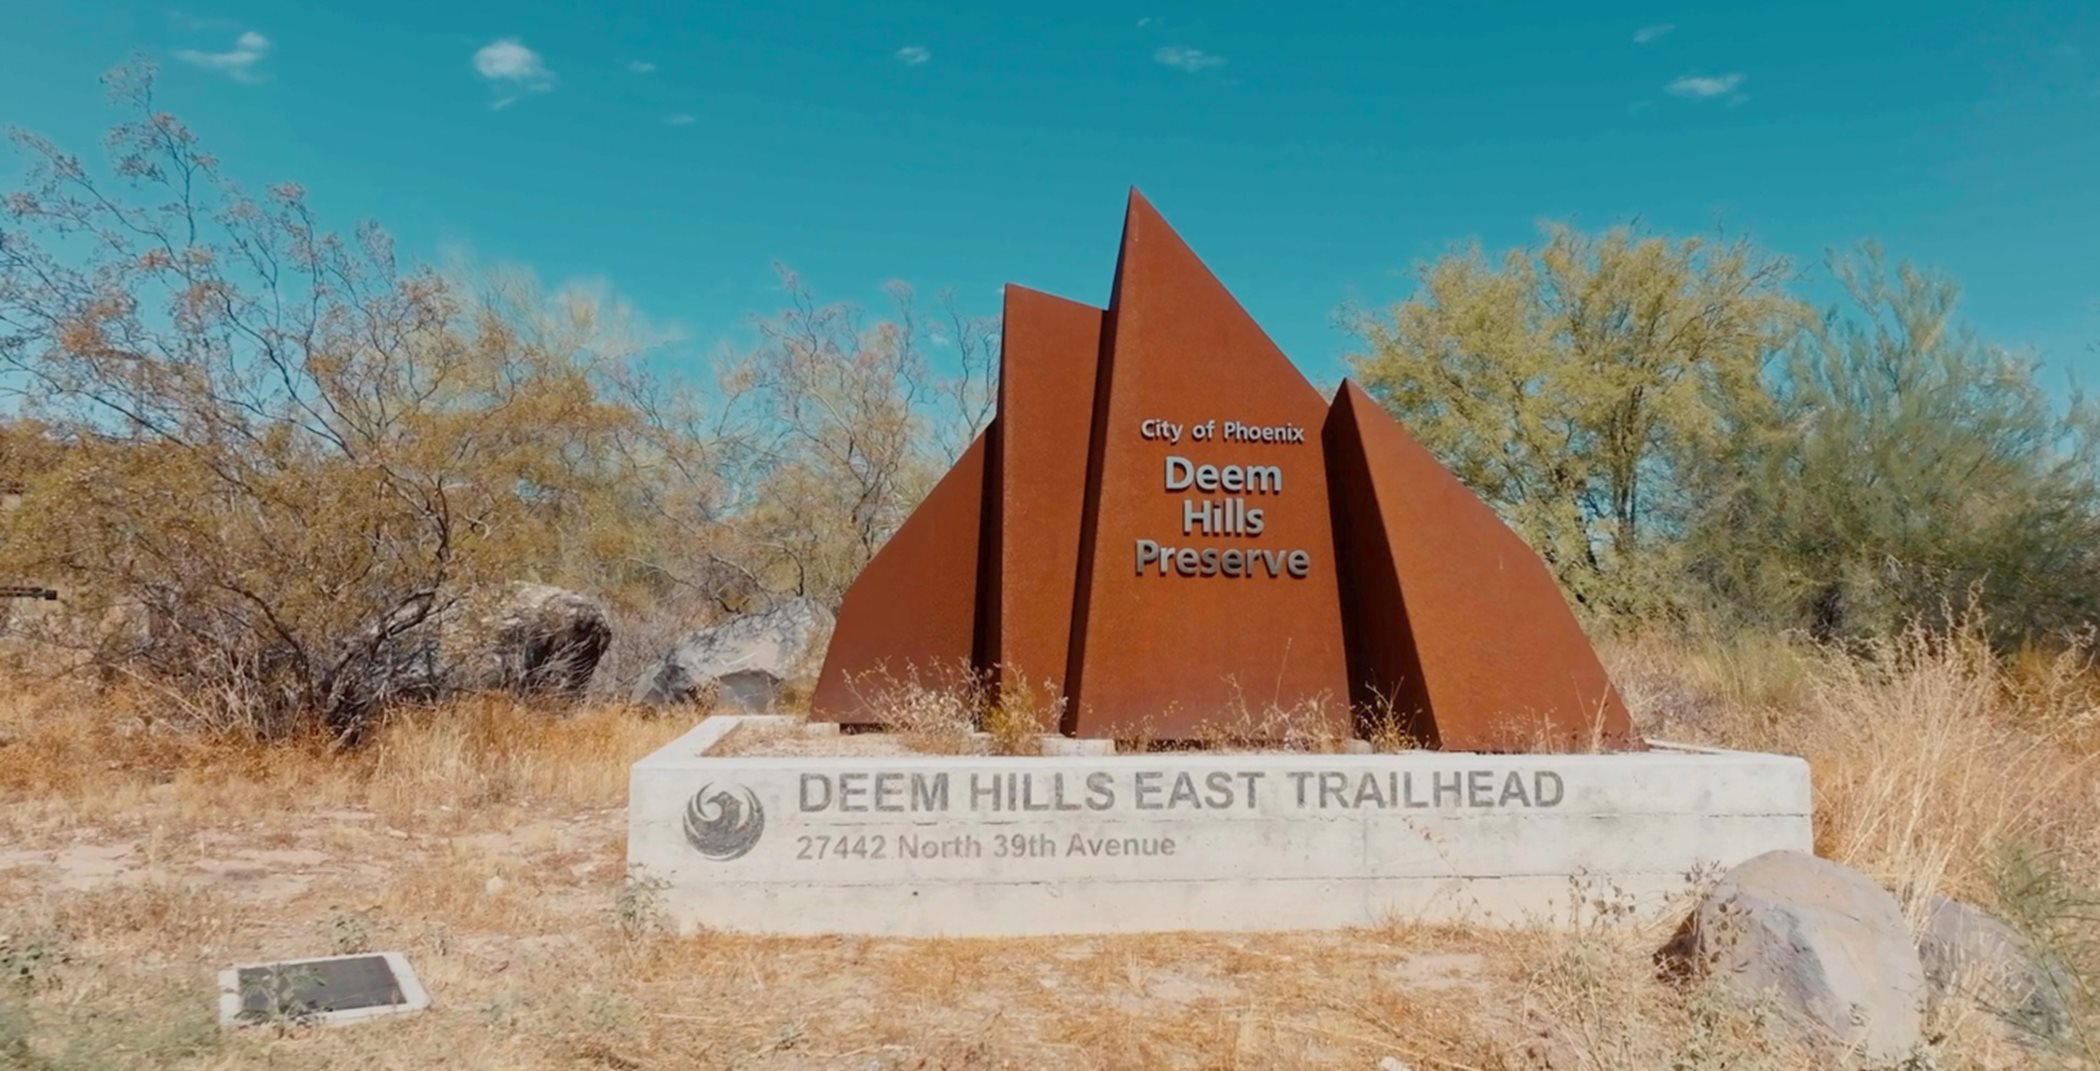 Deem Hills entry sign